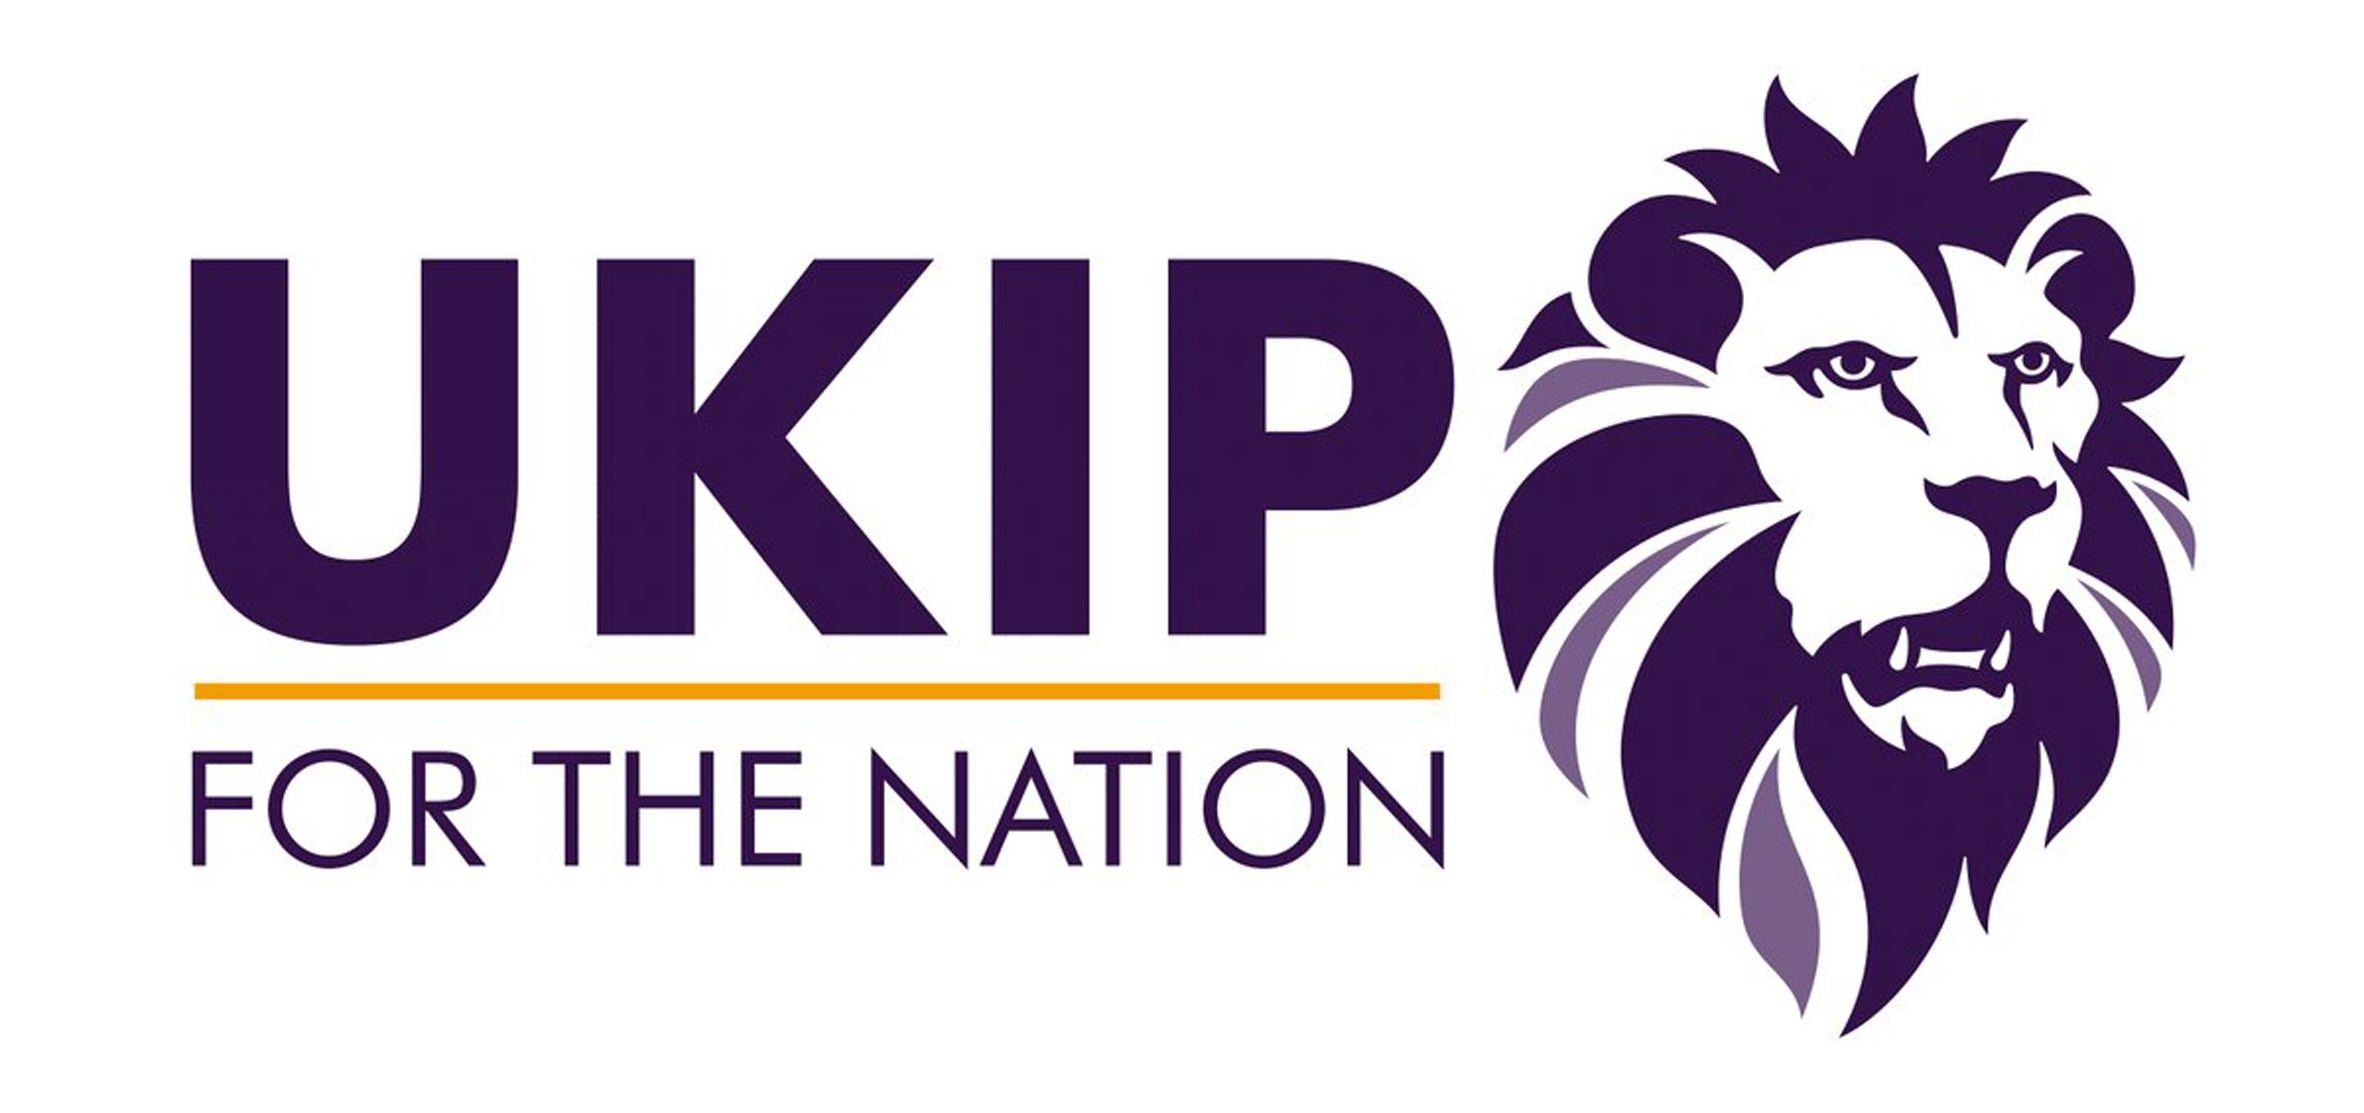 Yellow and Purple Lion Logo - UKIP faces copyright battle with Premier League over similar lion